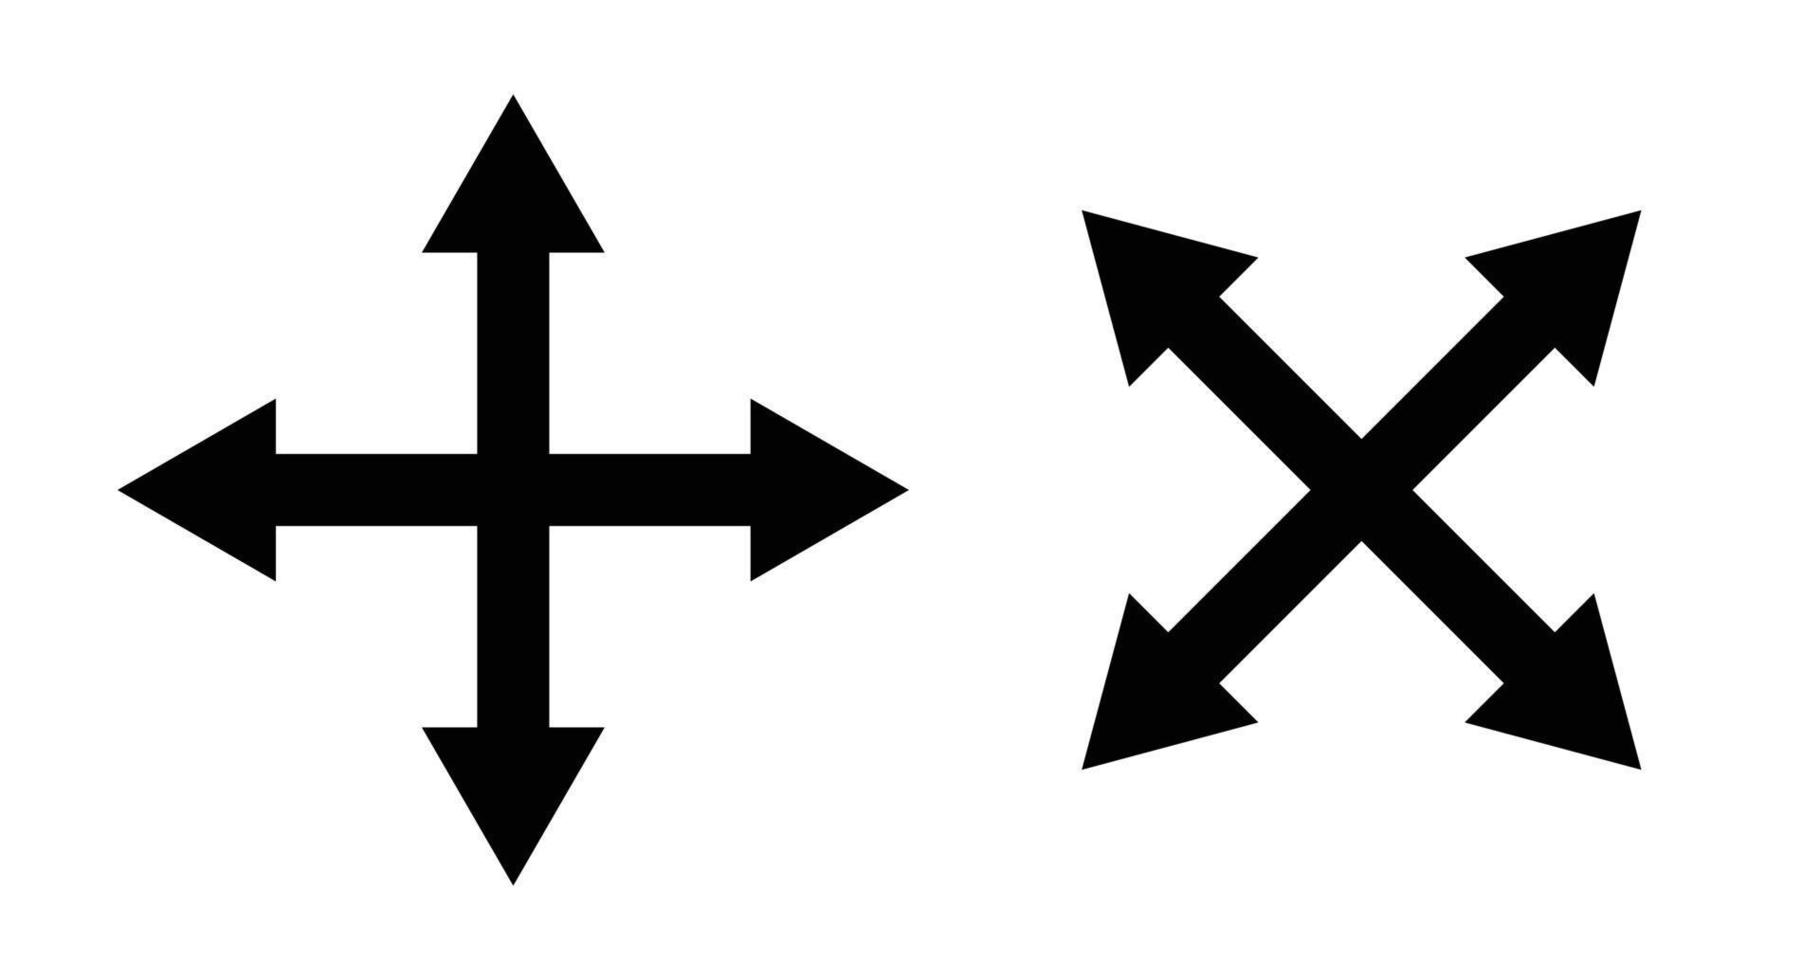 Cross cursor icon set. Simple vector. vector